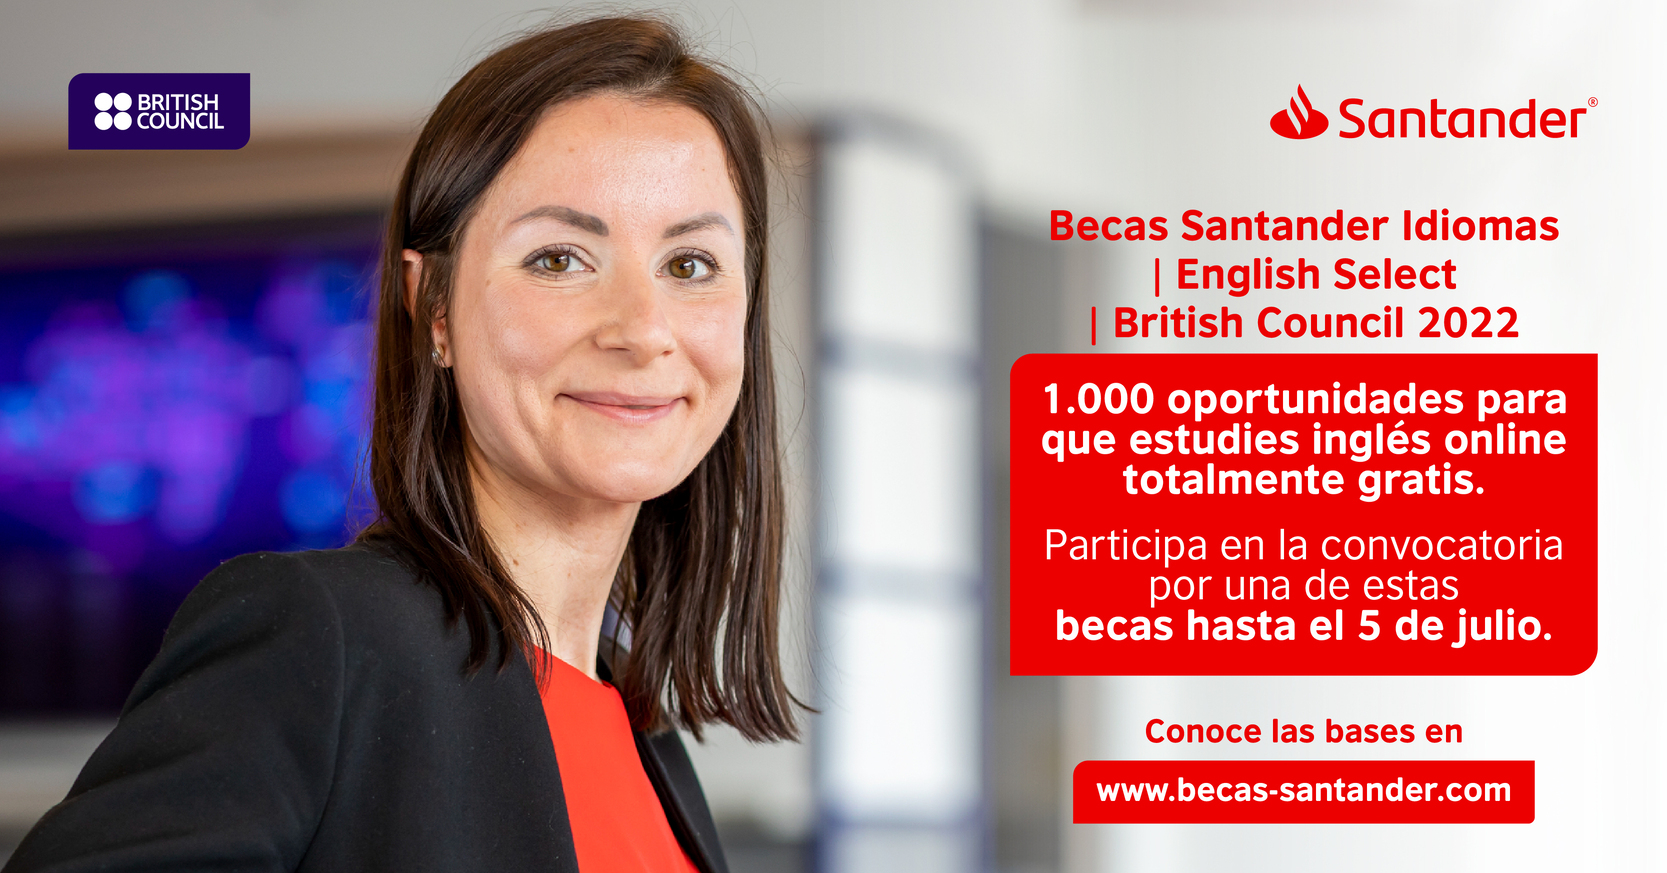 Lanzamiento Becas Santander Idiomas | English Select | British Council 2022